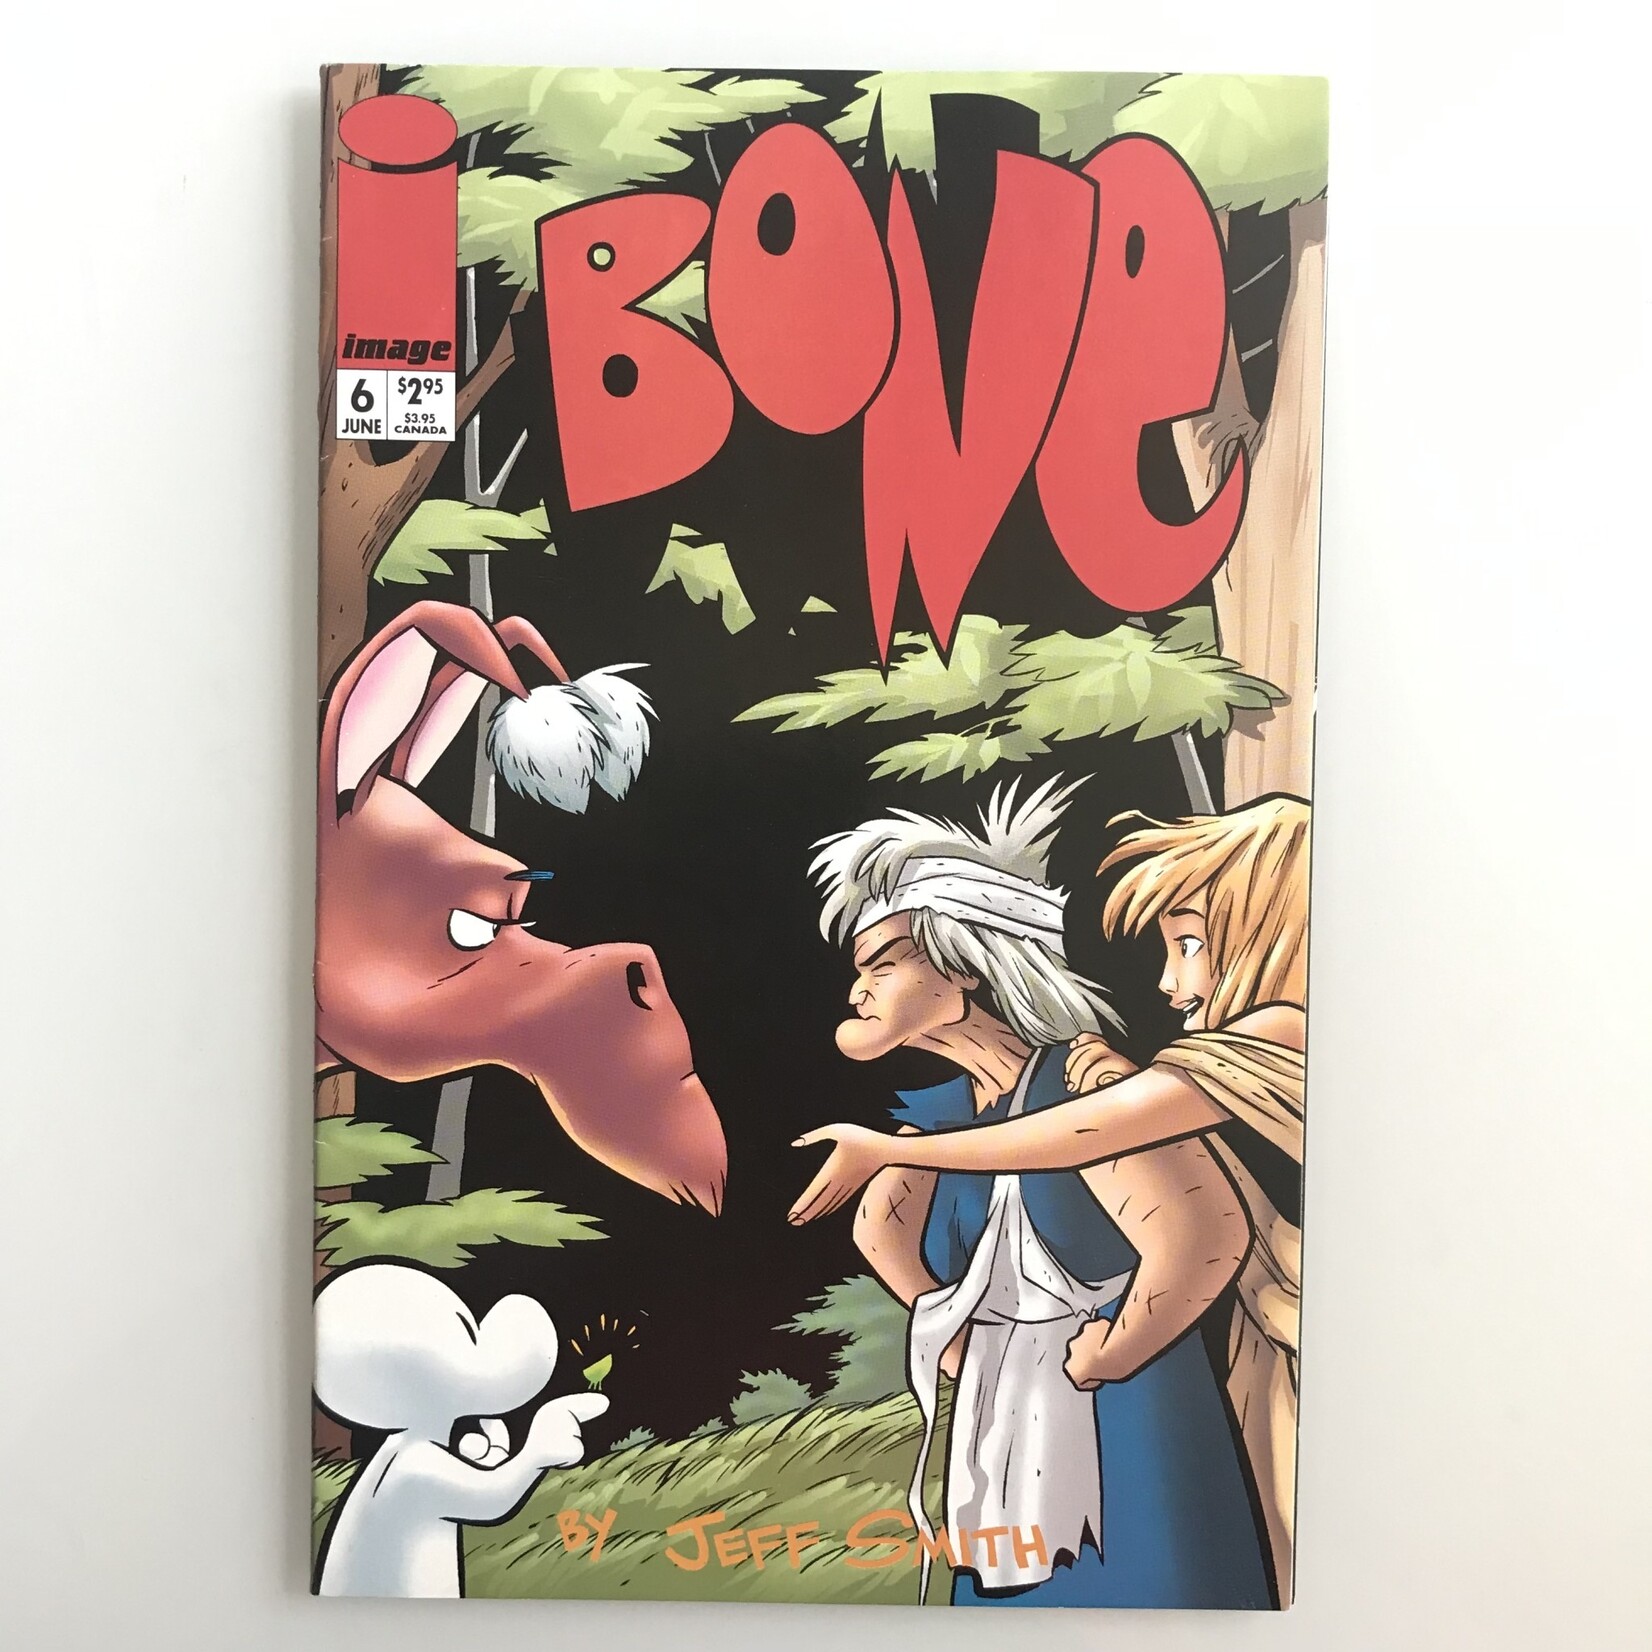 Bone - Vol. 2 #06 June 1996 - Comic Book